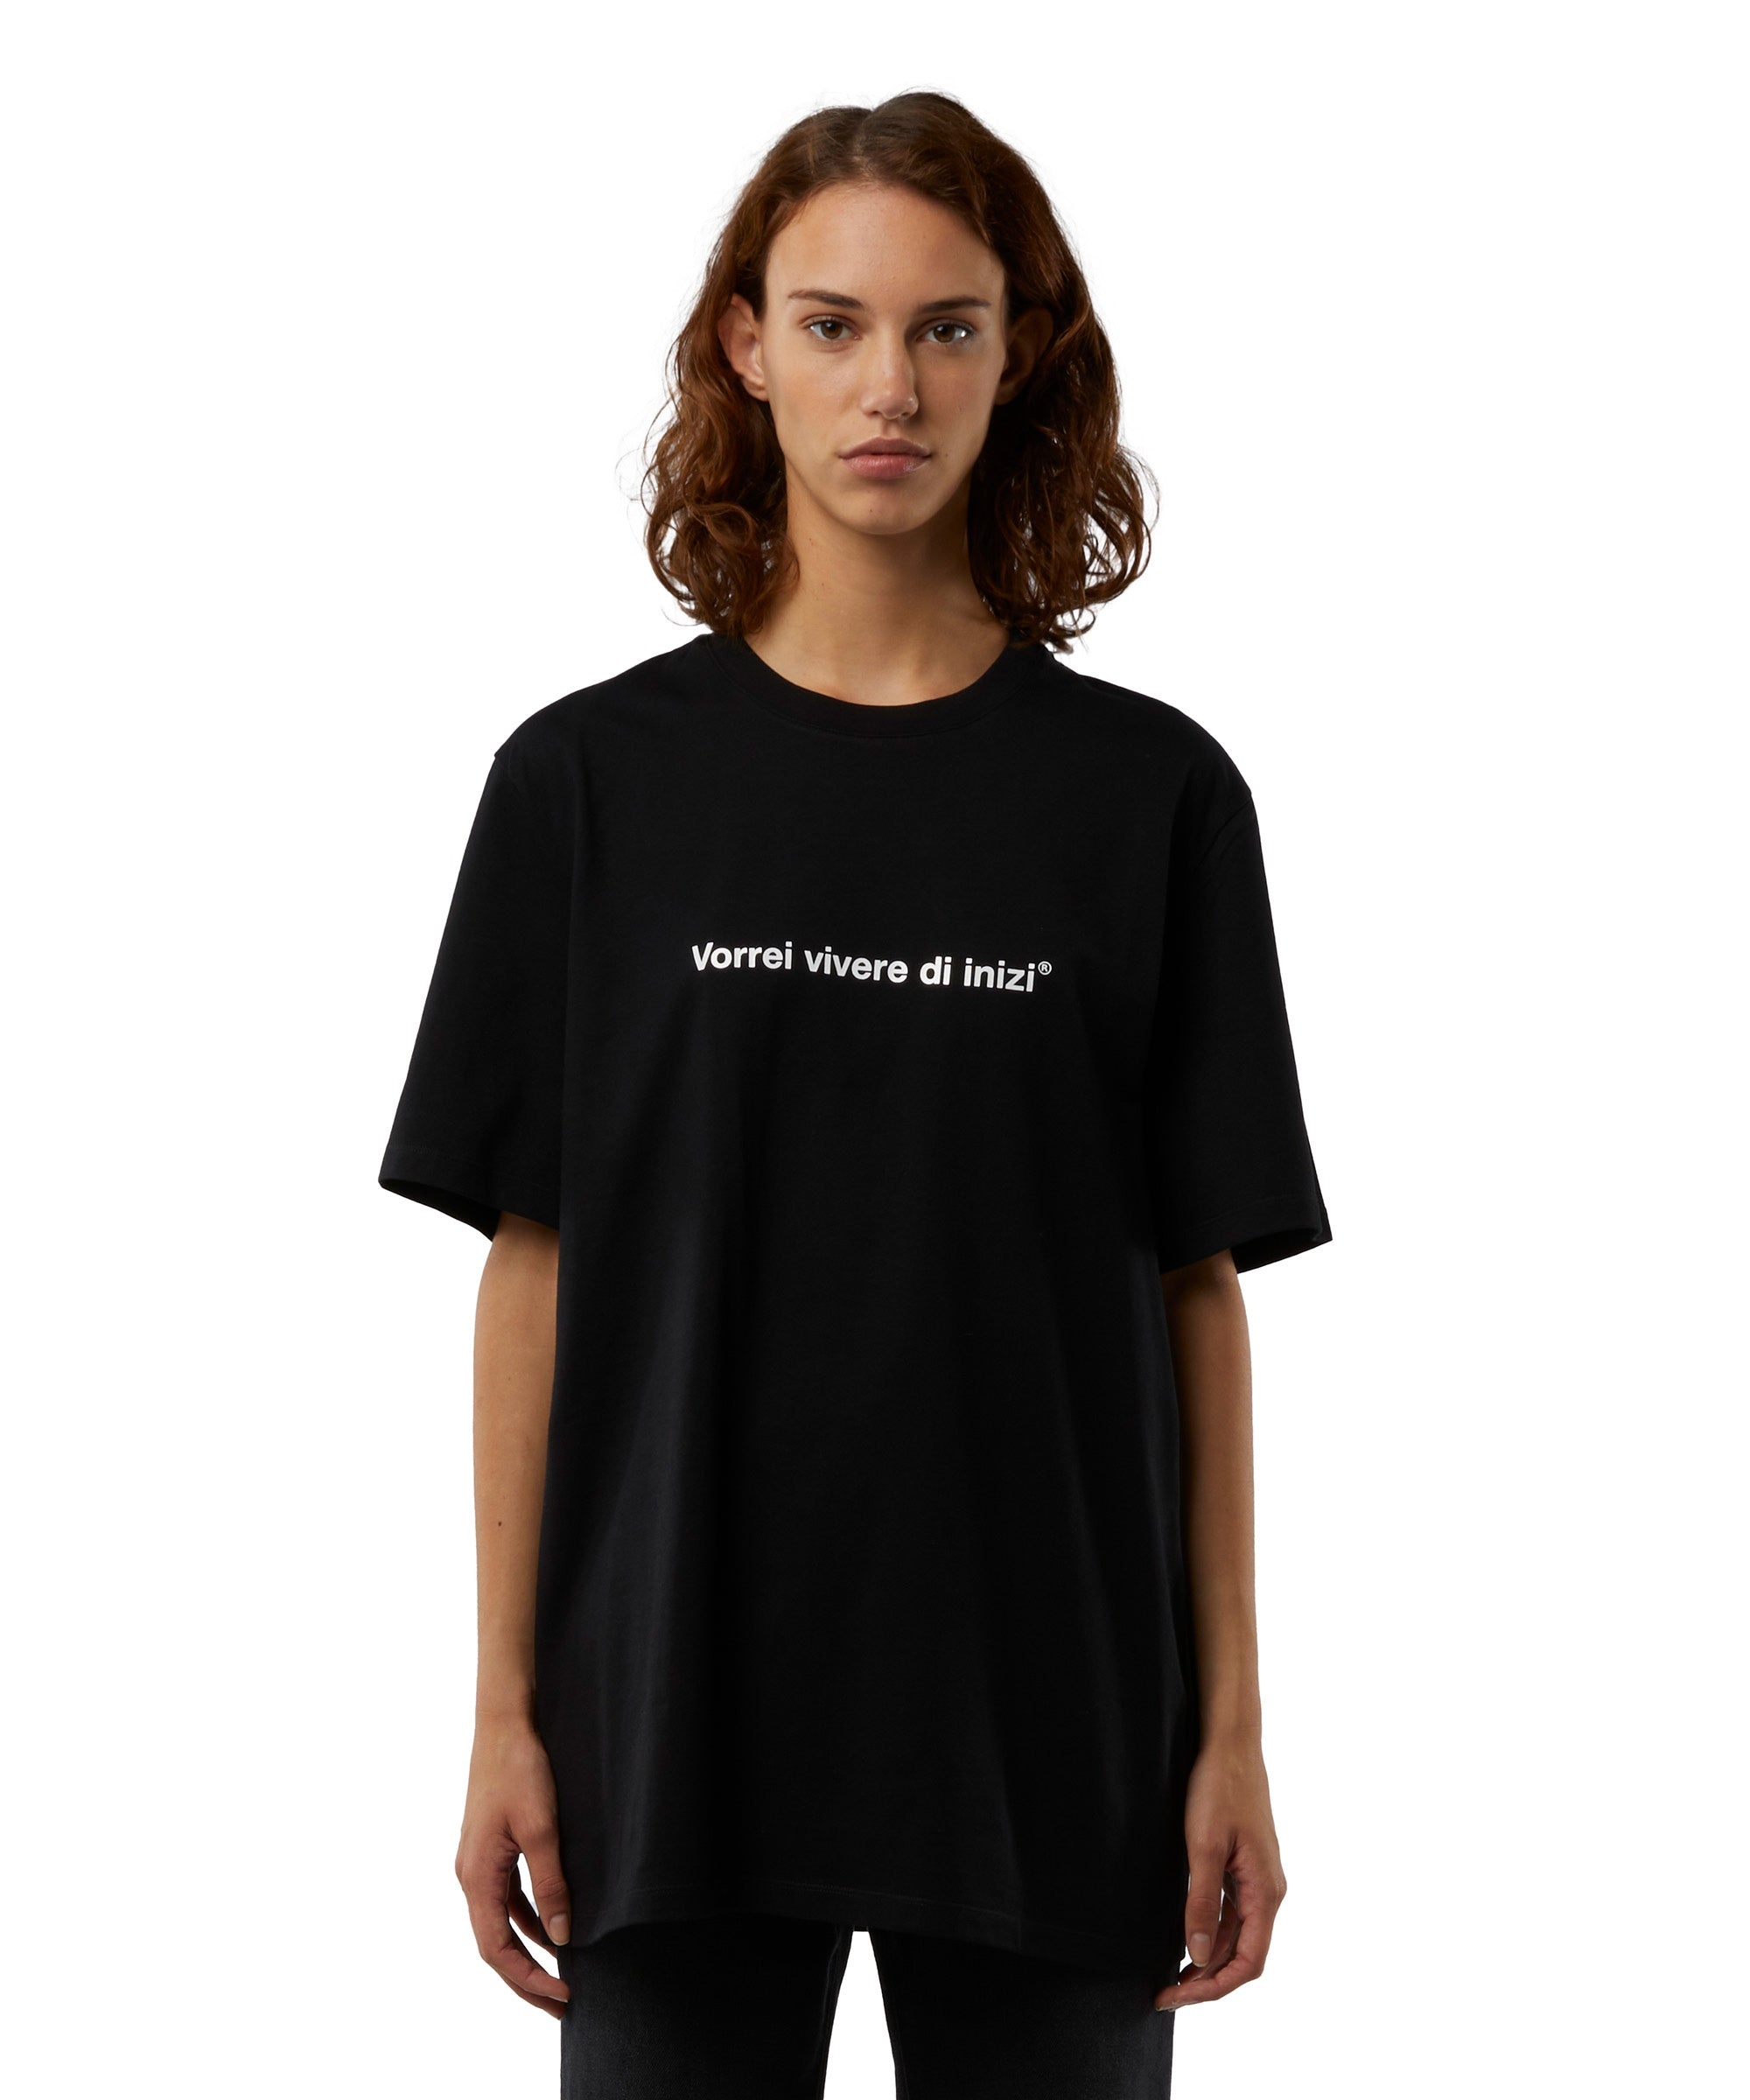 T-shirt quote "Vorrei vivere di inizi" - 5